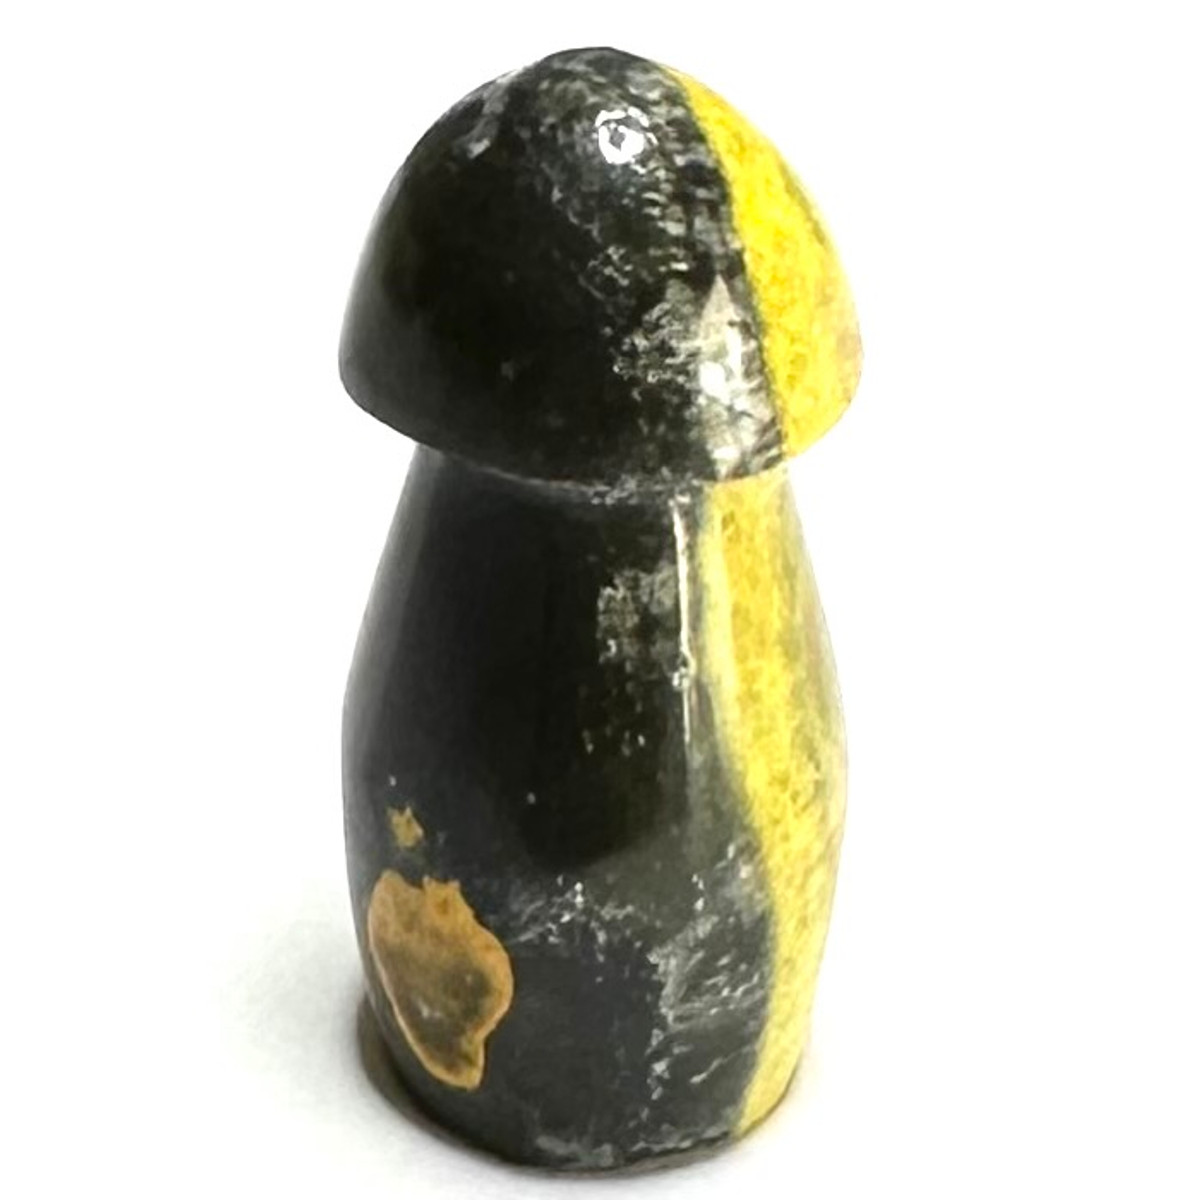 One of a Kind Bumble Bee Jasper Carved Stone Mushroom-1 1/4 x 1/2-NC6206"